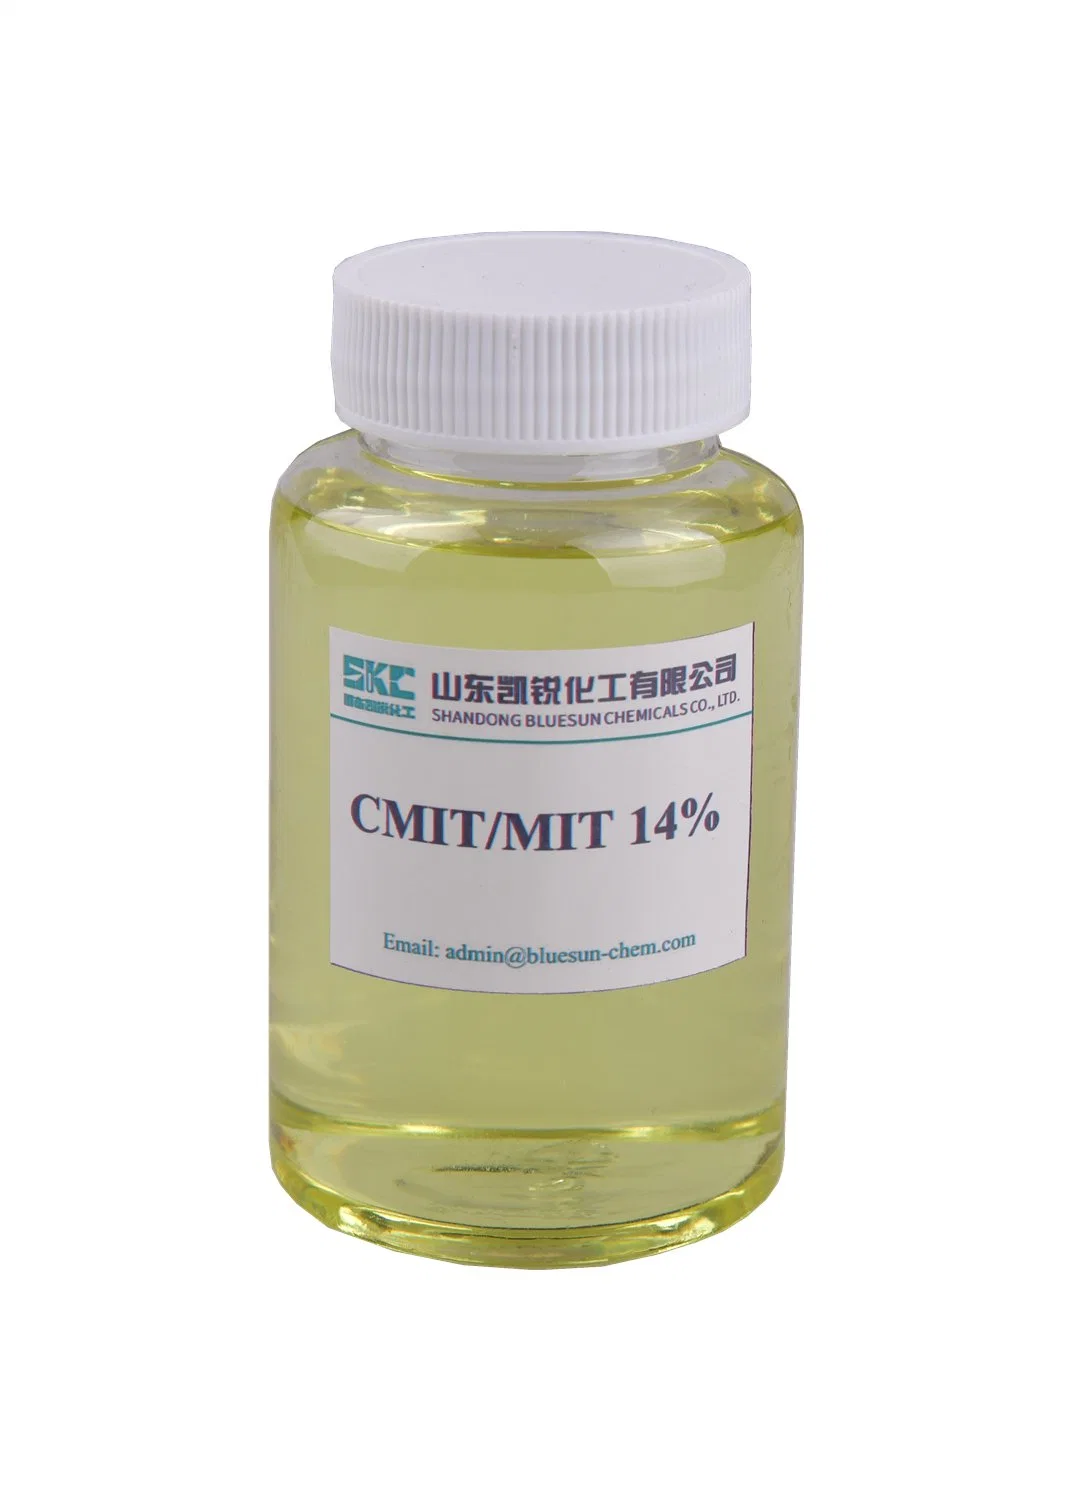 CMIT-mit wird in den Bereichen Wasseraufbereitung, Papierchemikalien und Lackierung eingesetzt